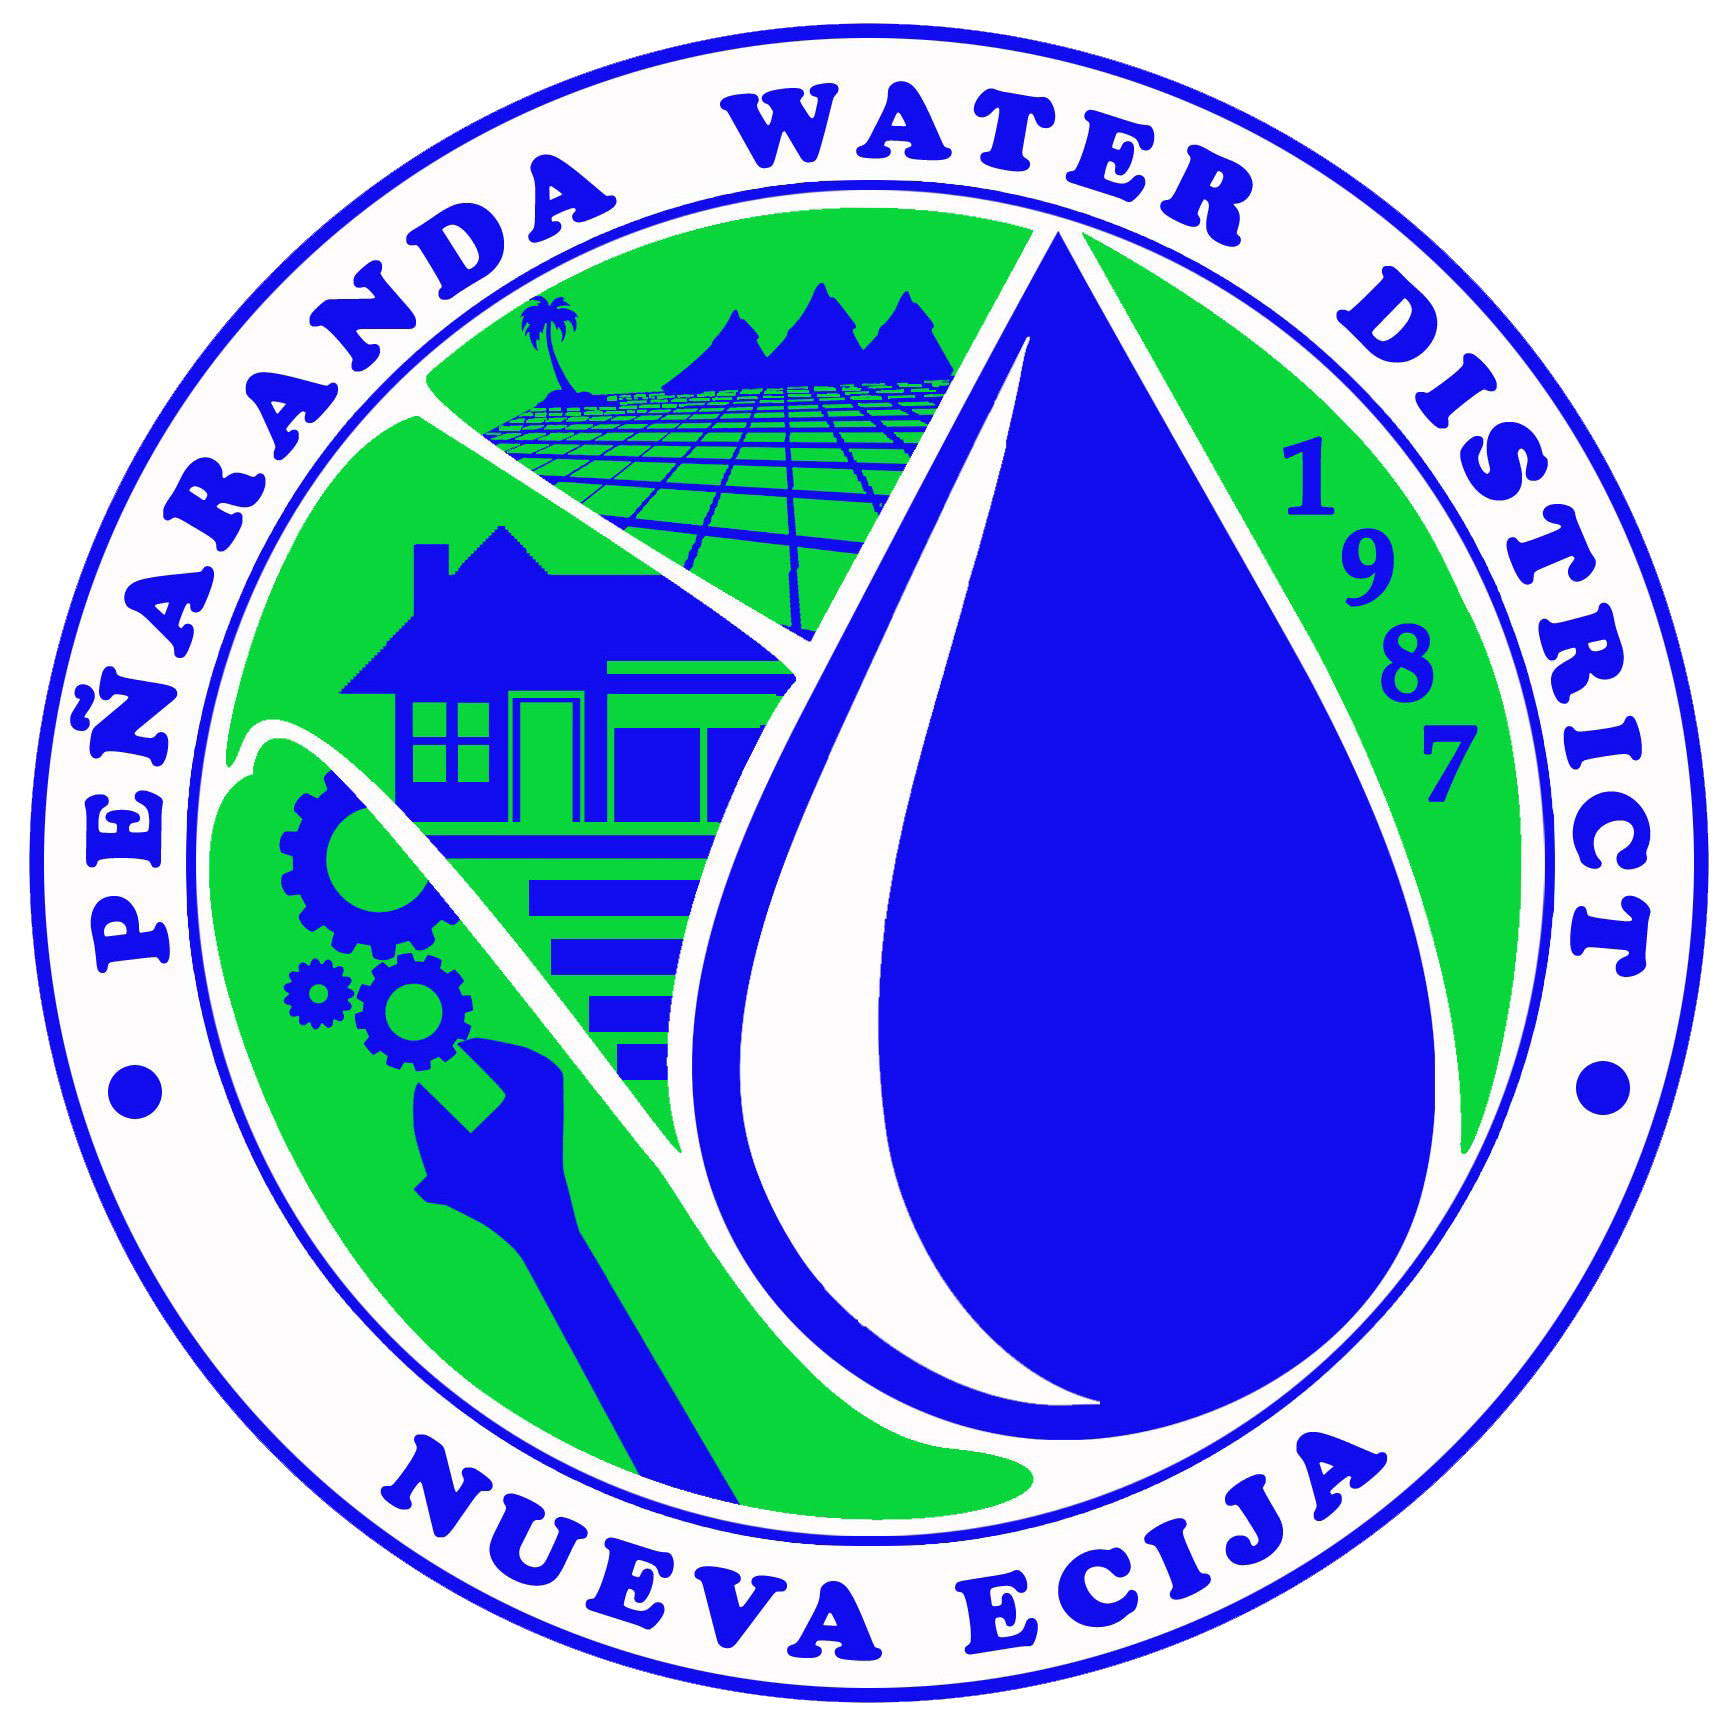 PENARANDA WATER DISTRICT